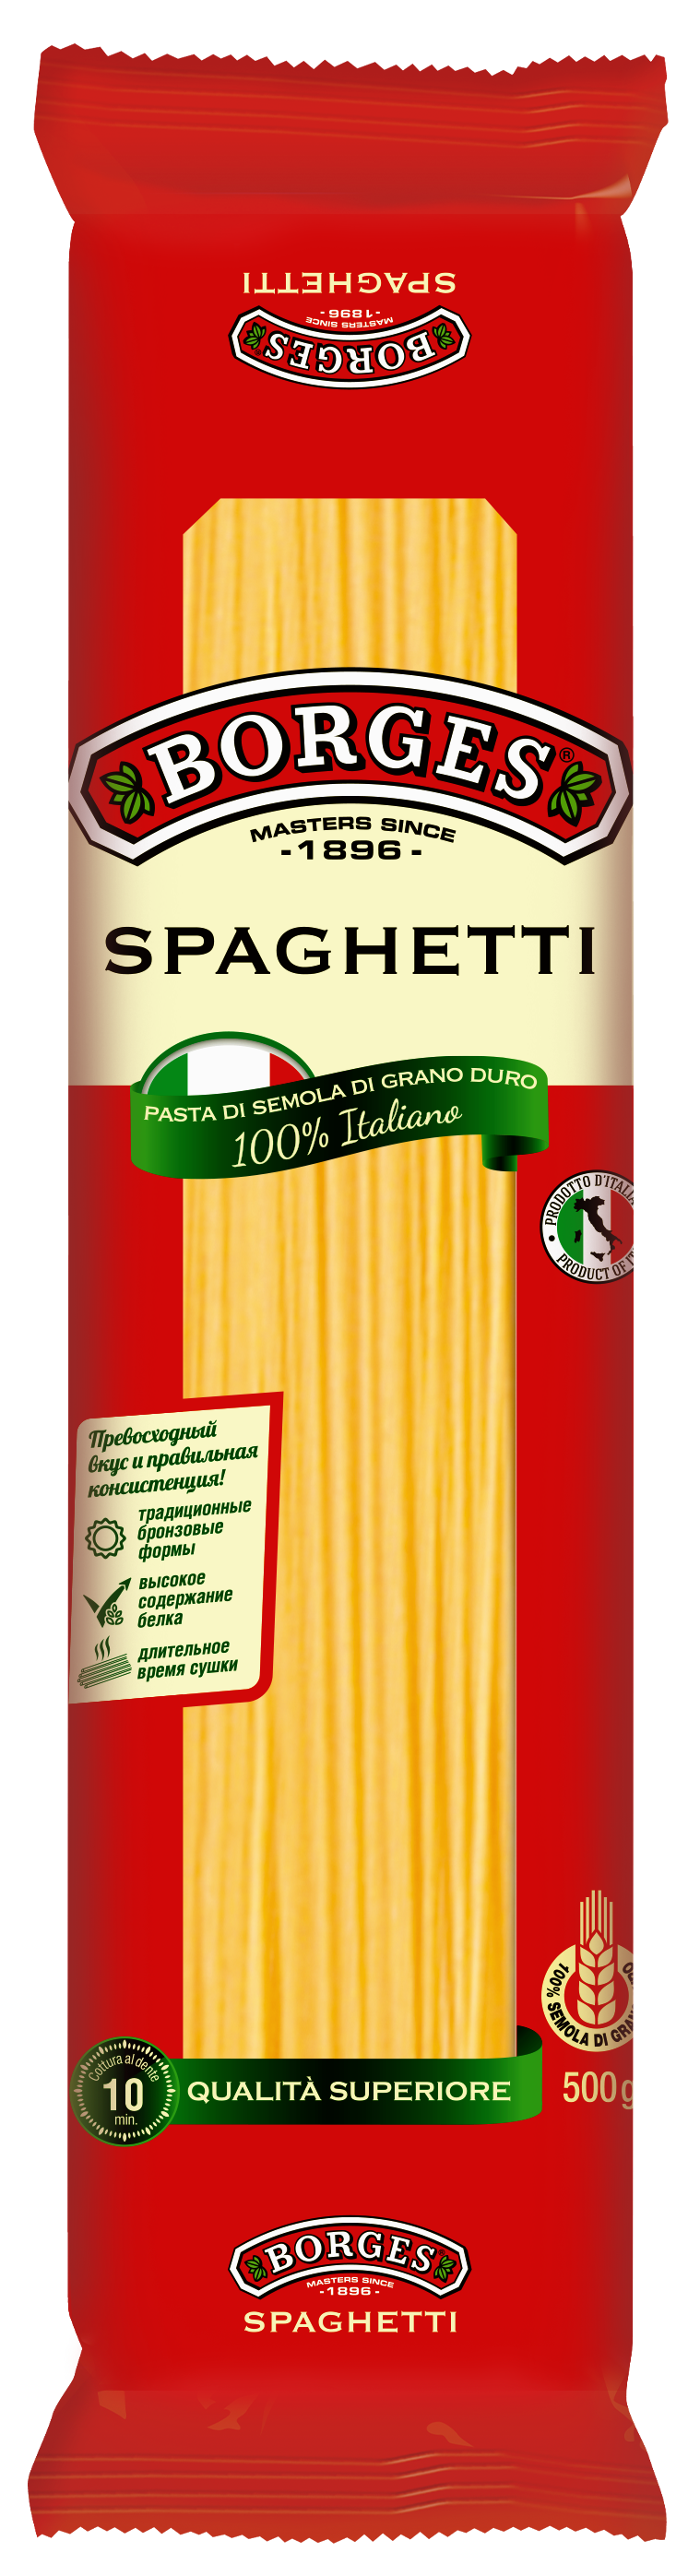 Espaguetis PNG